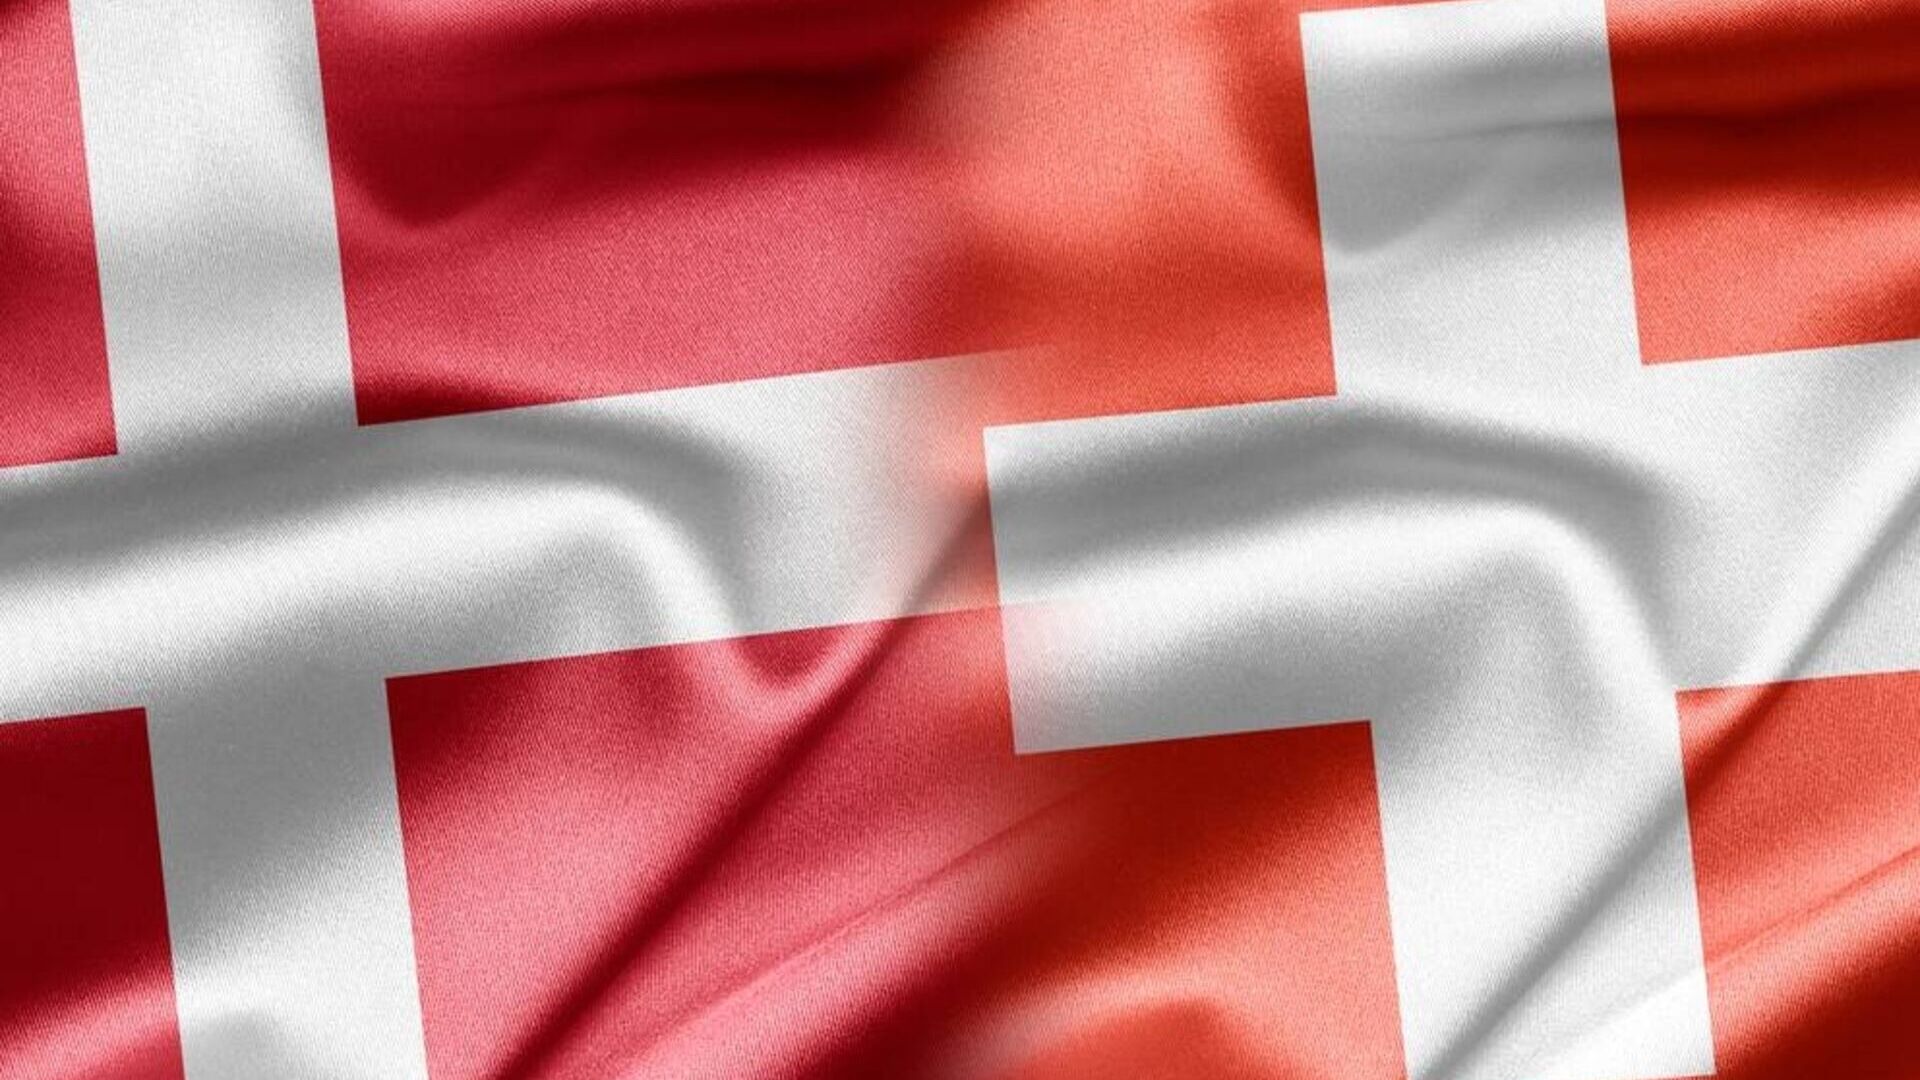 Ελβετία Δανία: μια γραφική συγχώνευση μεταξύ των σημαιών της Συνομοσπονδίας και του Βασιλείου